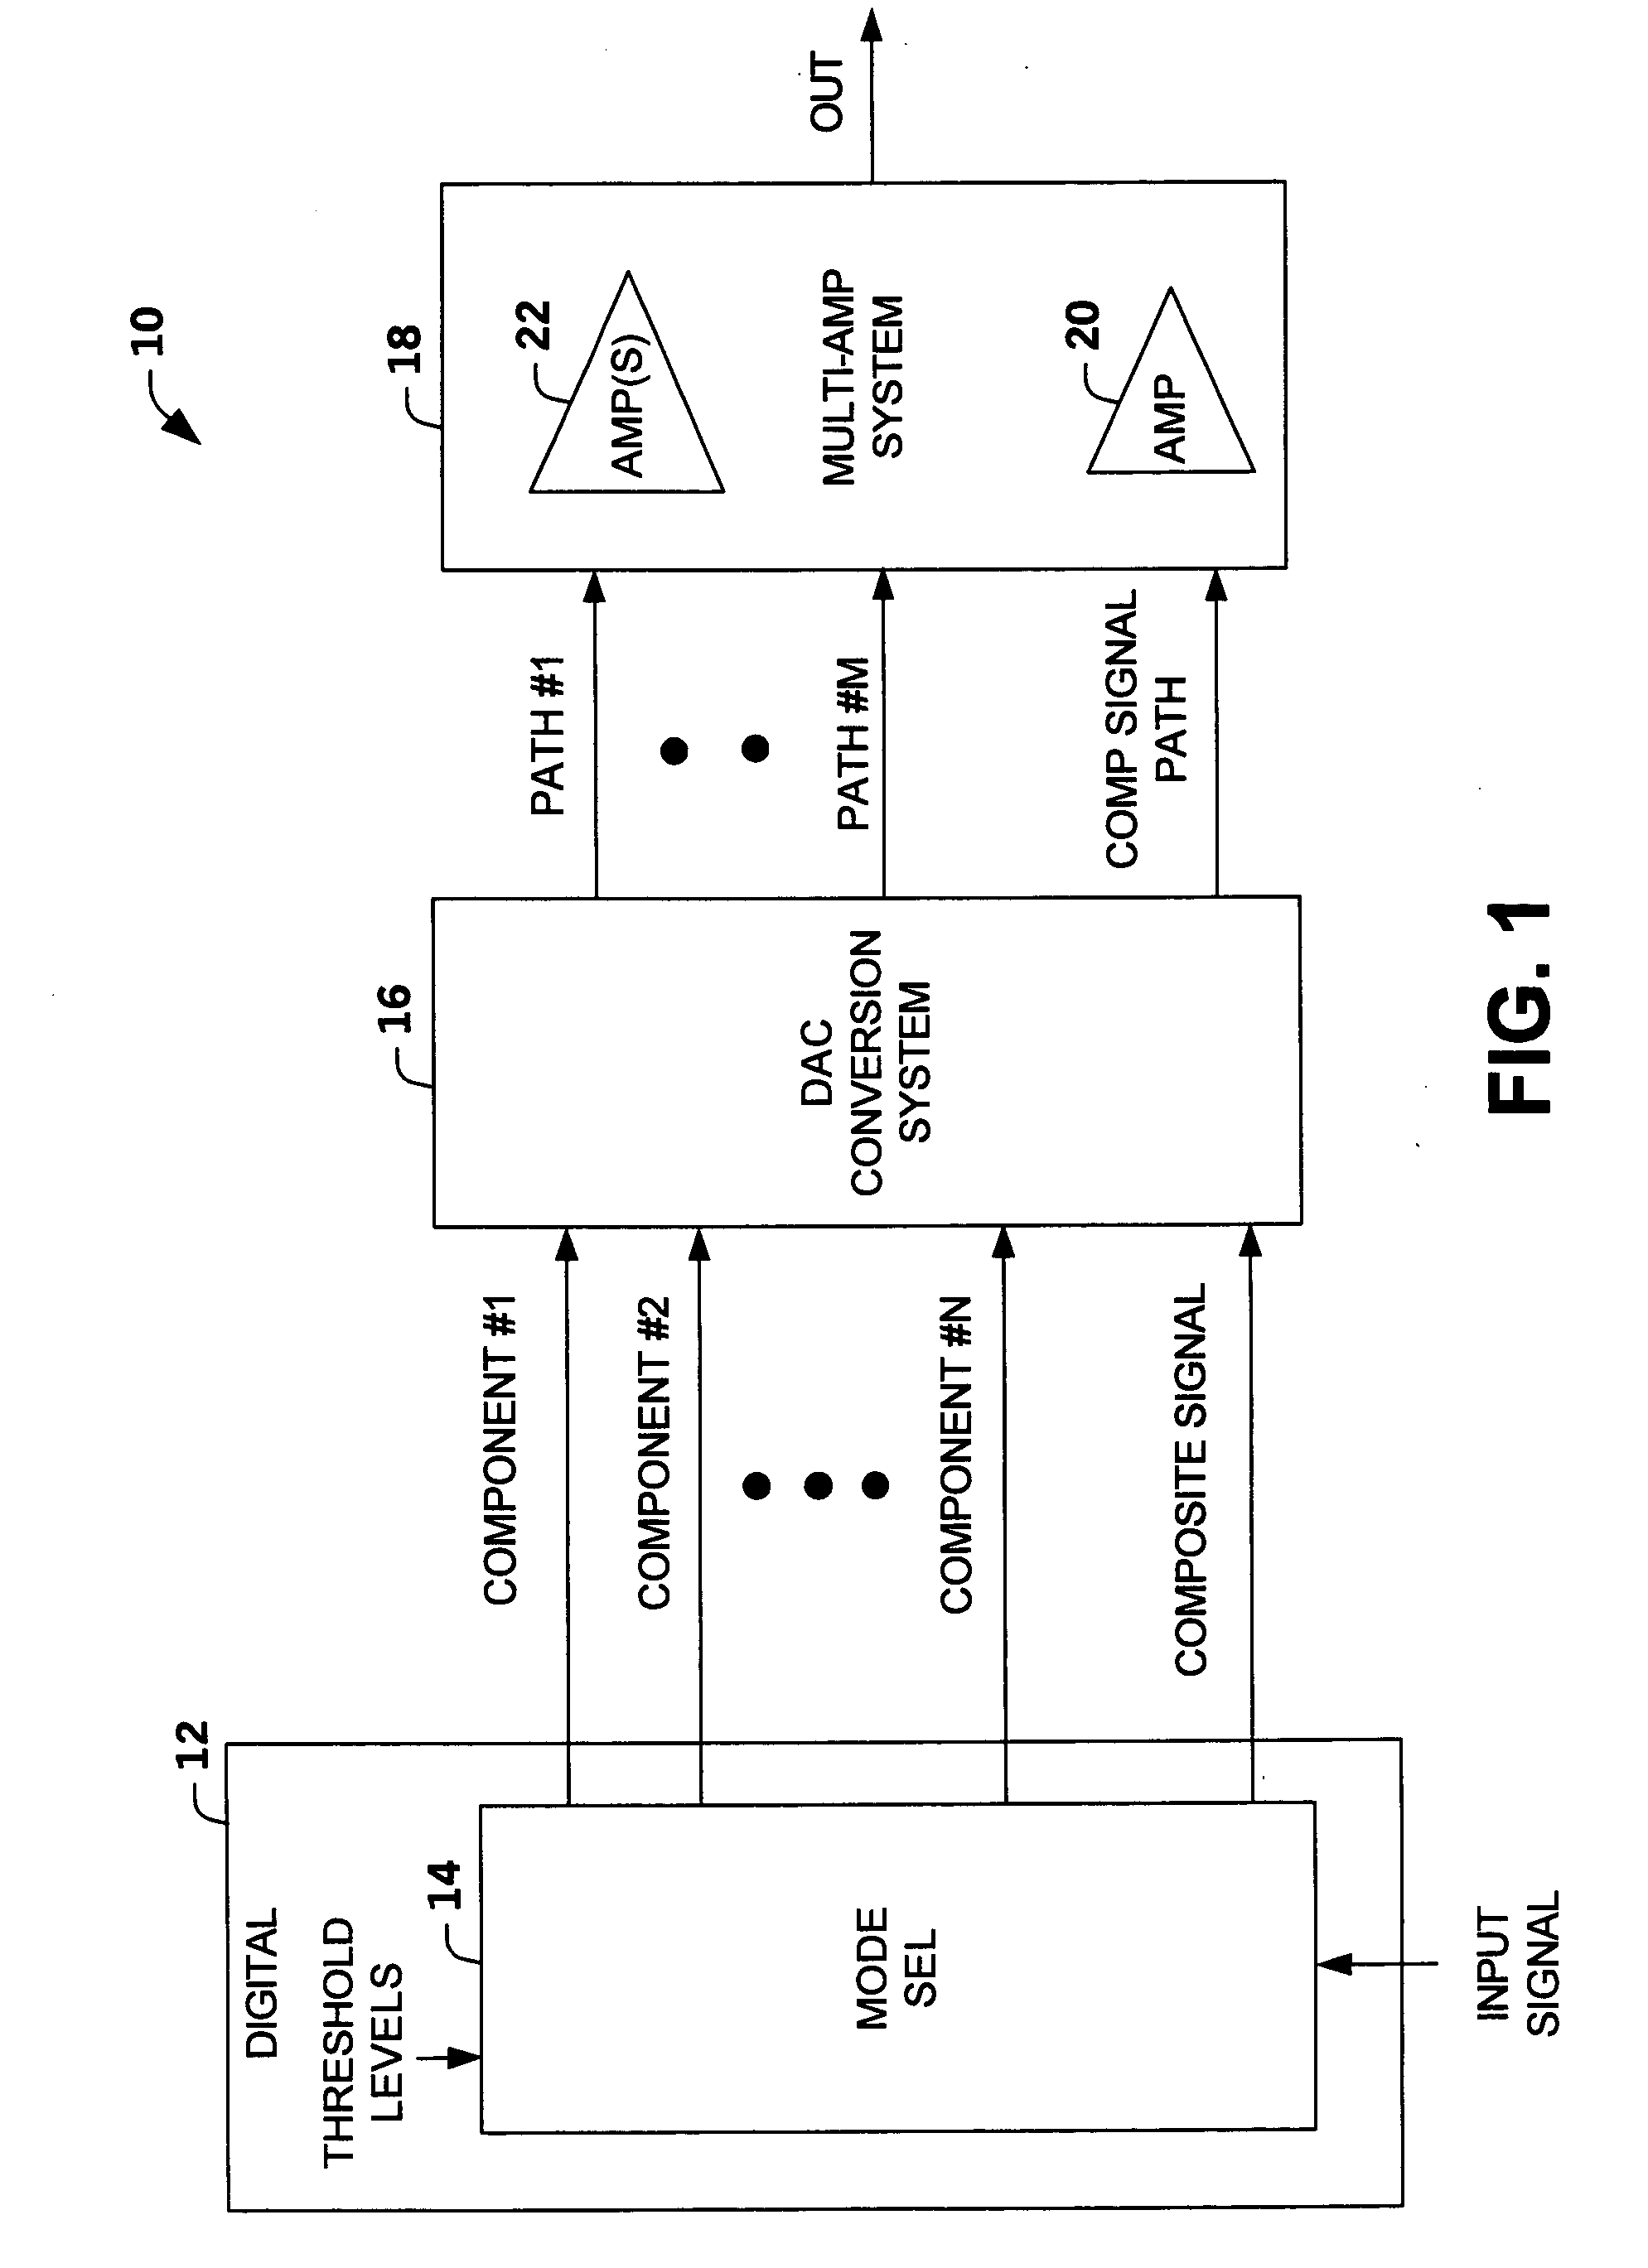 Multi-mode multi-amplifier architecture